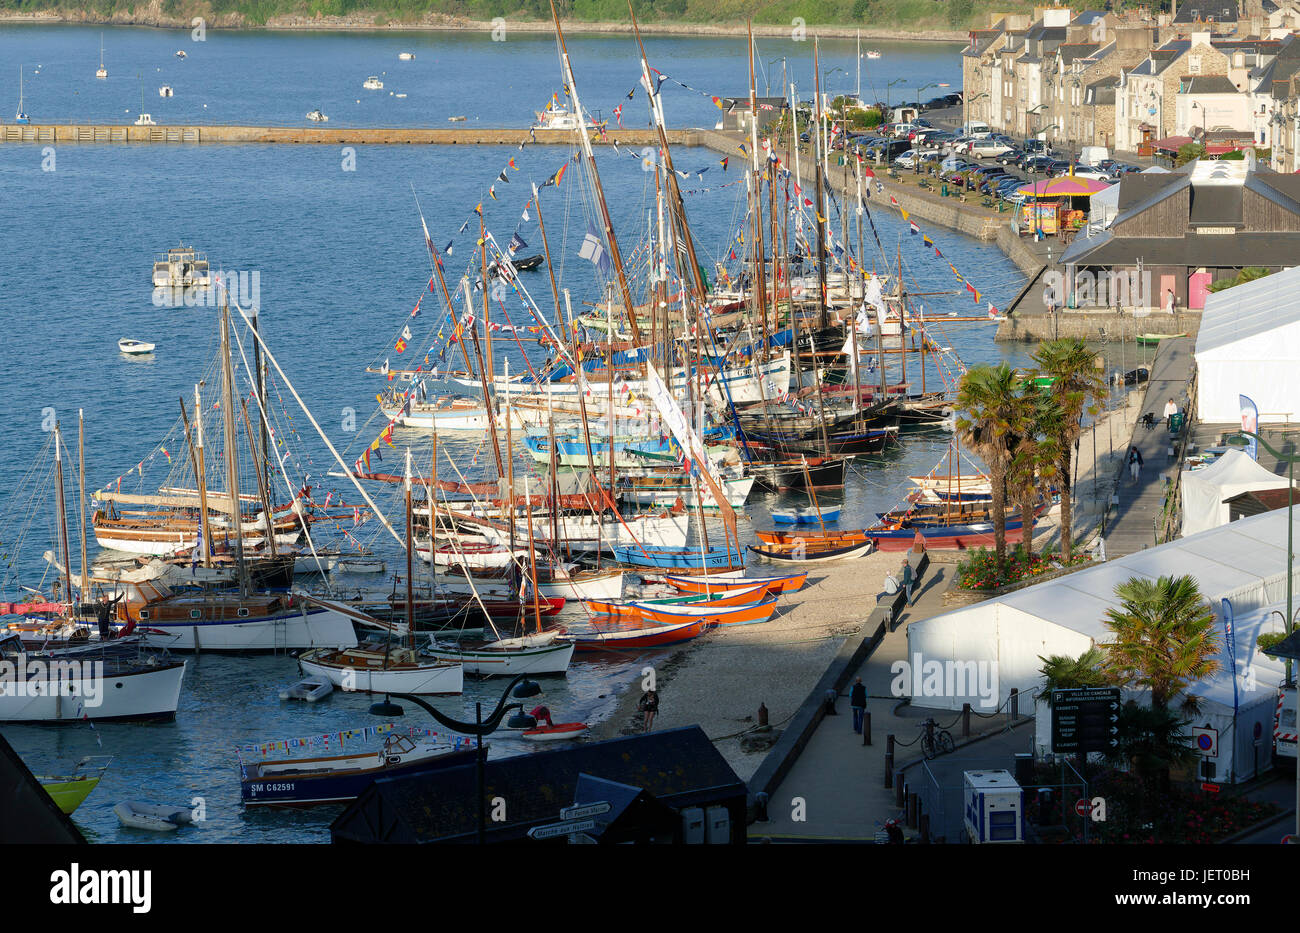 Les bateaux traditionnels à Cancale, port de la Houle, festival maritime : 'La Cancalaise à 30 ans' (Cancale, Ille et Vilaine, Bretagne, France). Banque D'Images